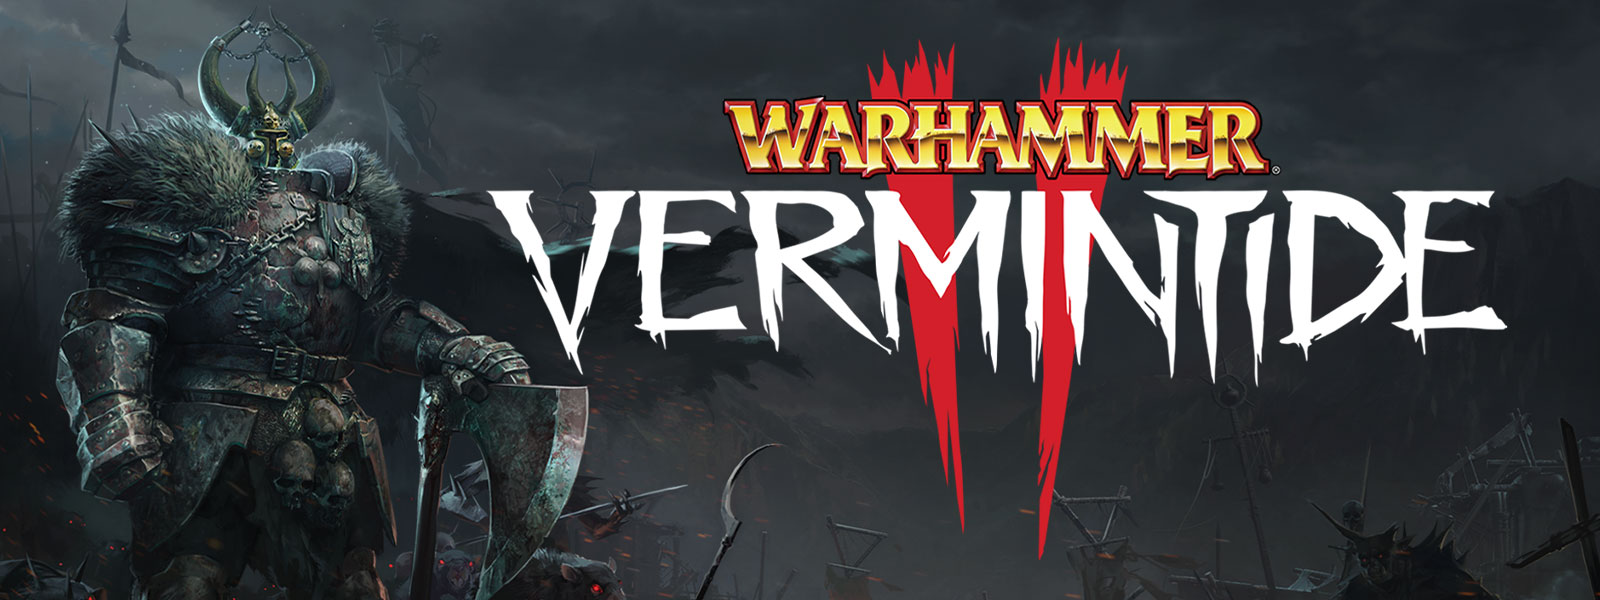 Warhammer: Vermintide 2, En figur i rustning med skulderbeskyttere af pels står i spidsen af en hær af rotter med lysende øjne.